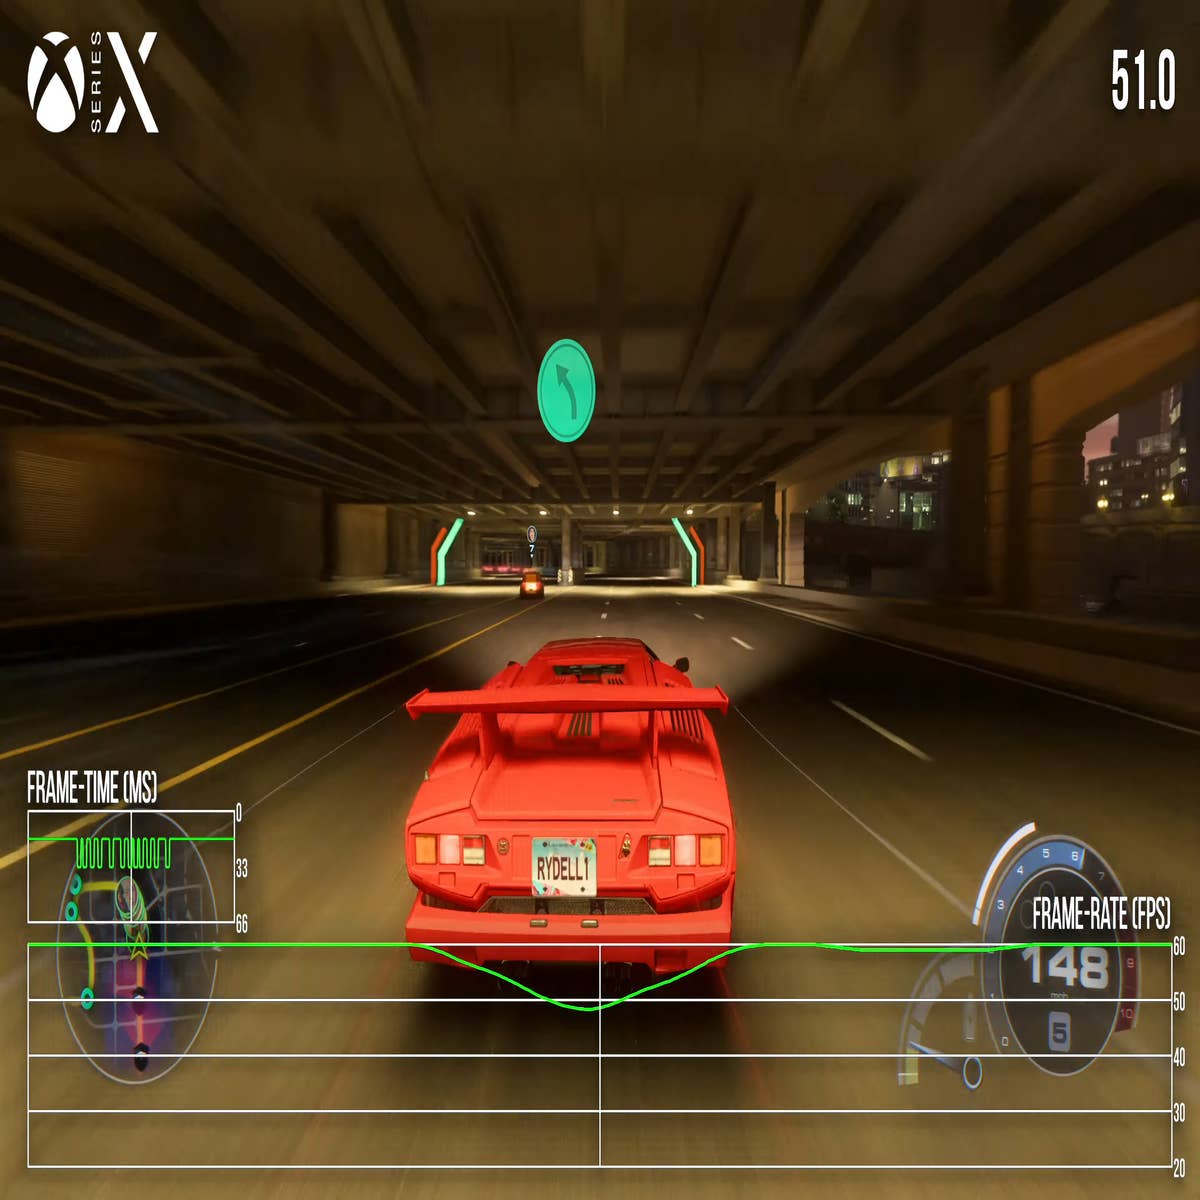 Need for Speed Unbound - melhorias profundas, toques artísticos